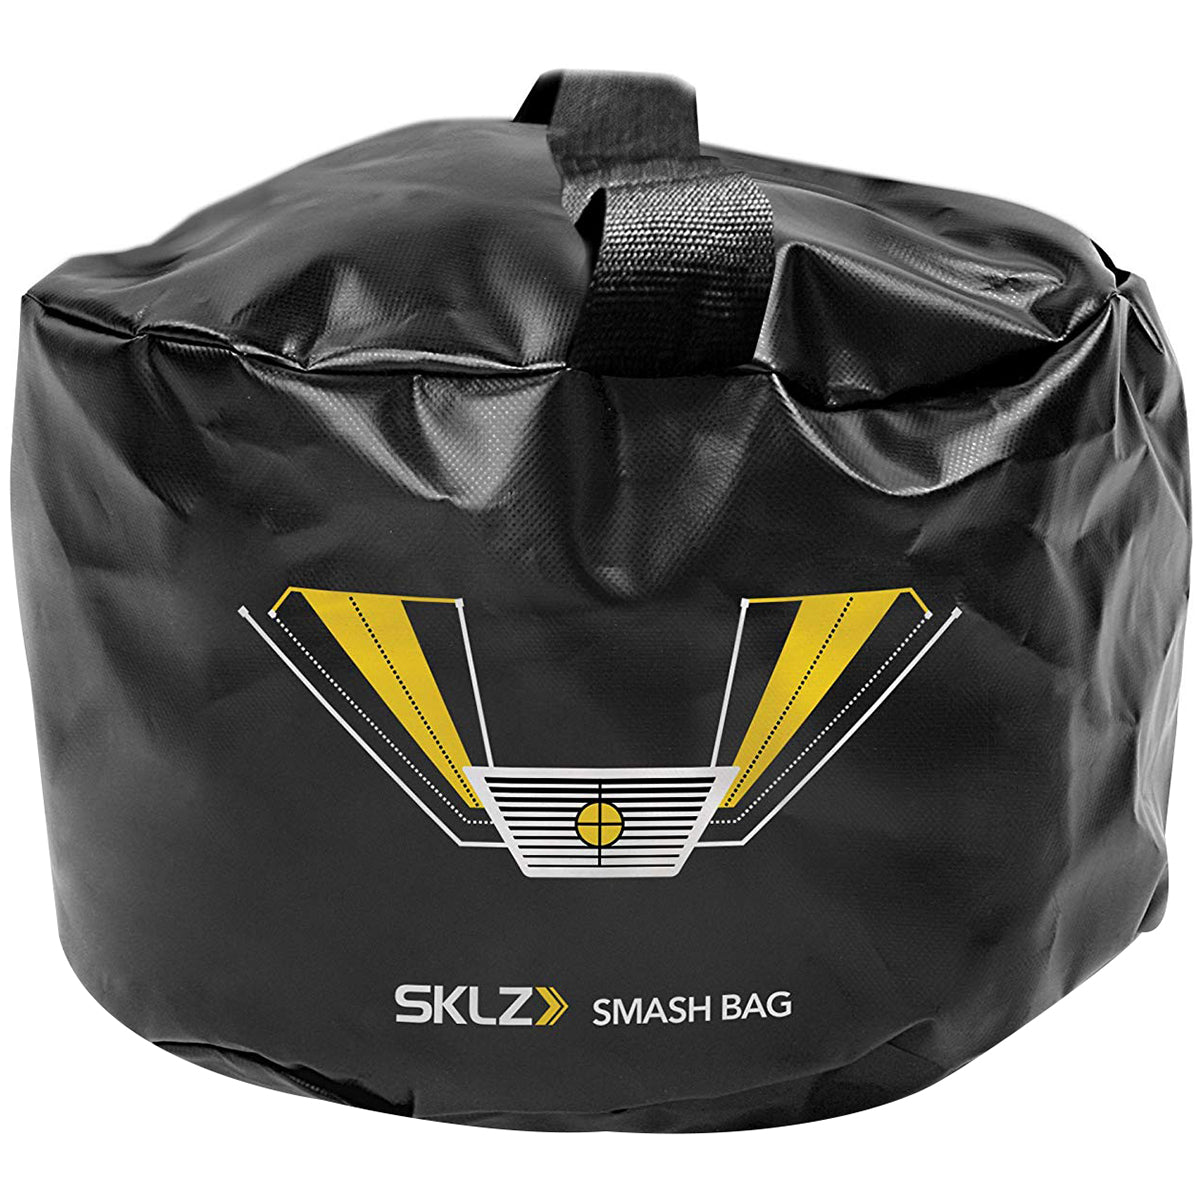 SKLZ Smash Bag Golf Impact Trainer - Black SKLZ